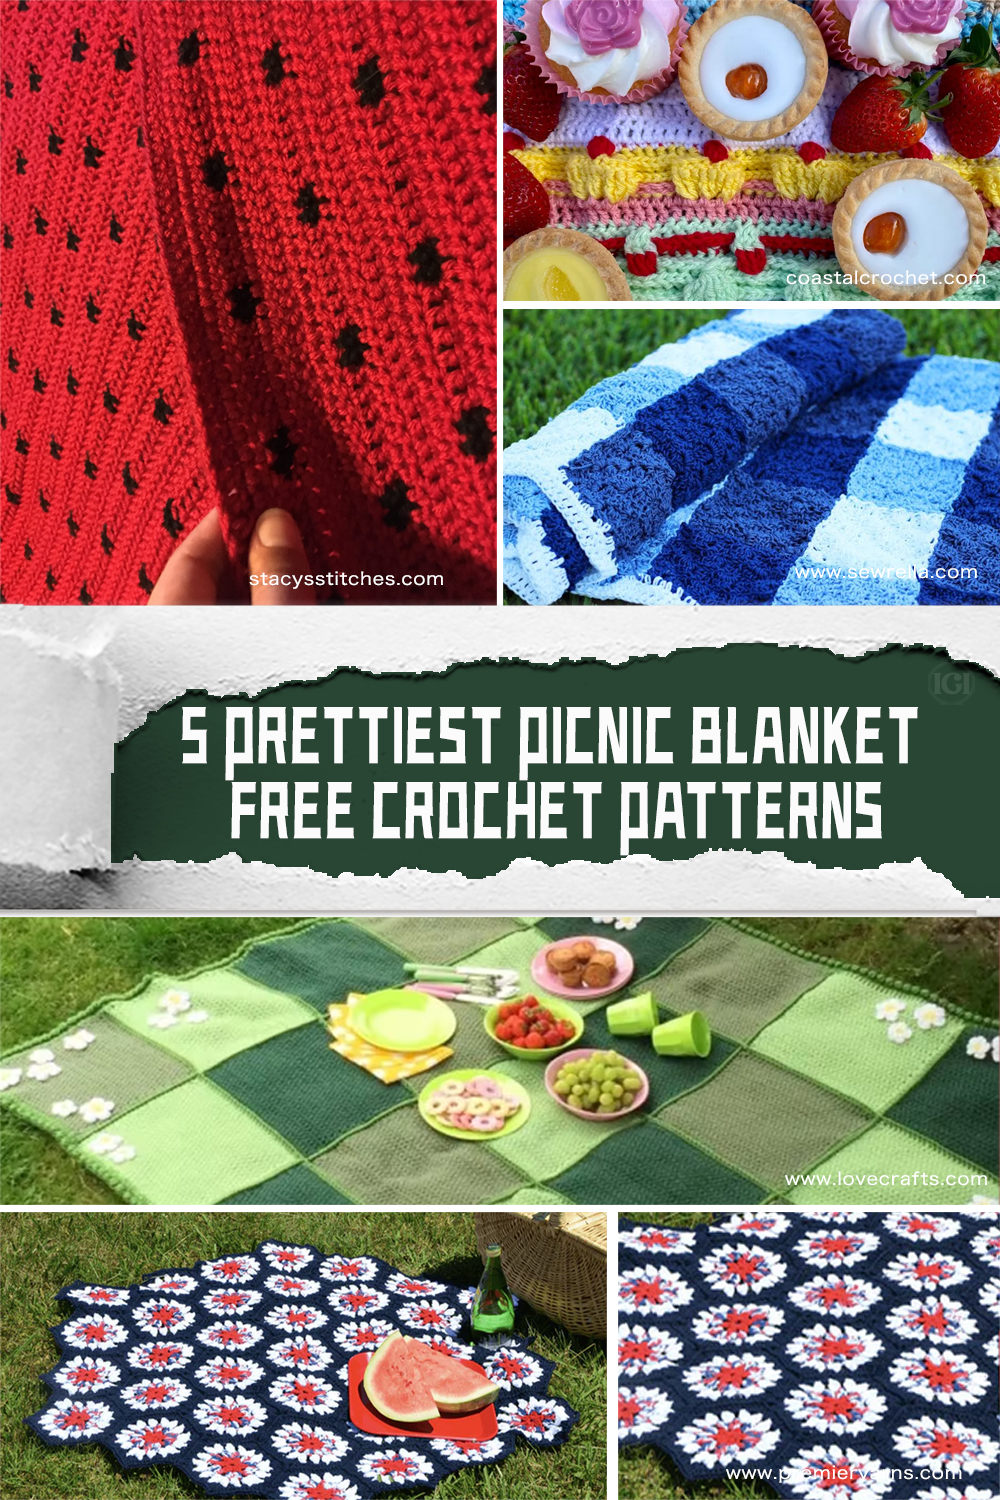 5 FREE Prettiest Crochet Picnic Blanket Patterns